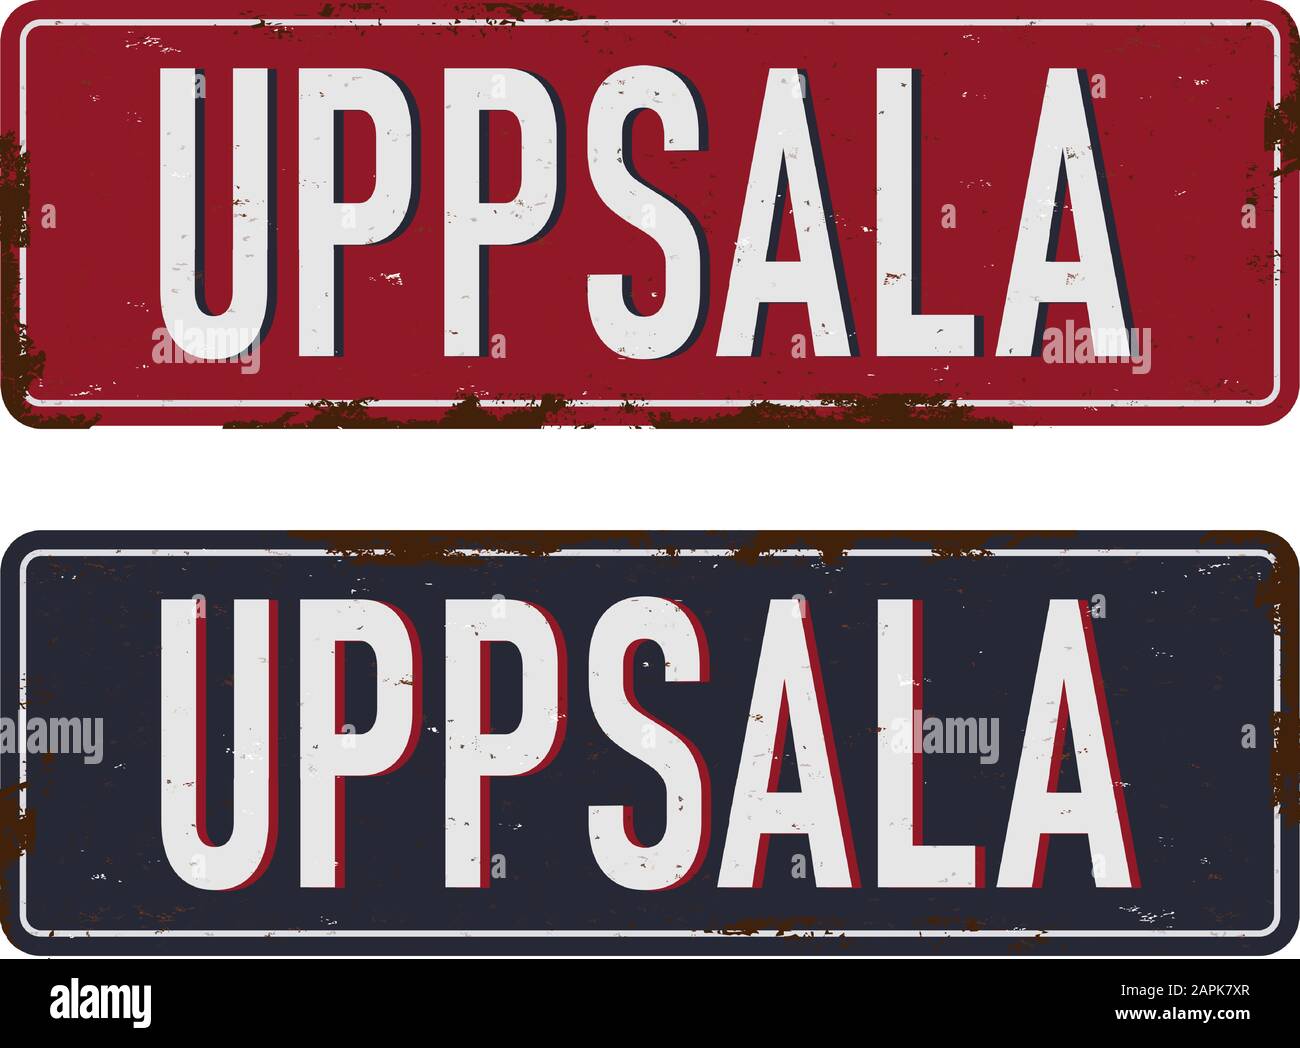 Un cartello stradale UPPSALA, immagine grafica vettoriale Illustrazione Vettoriale